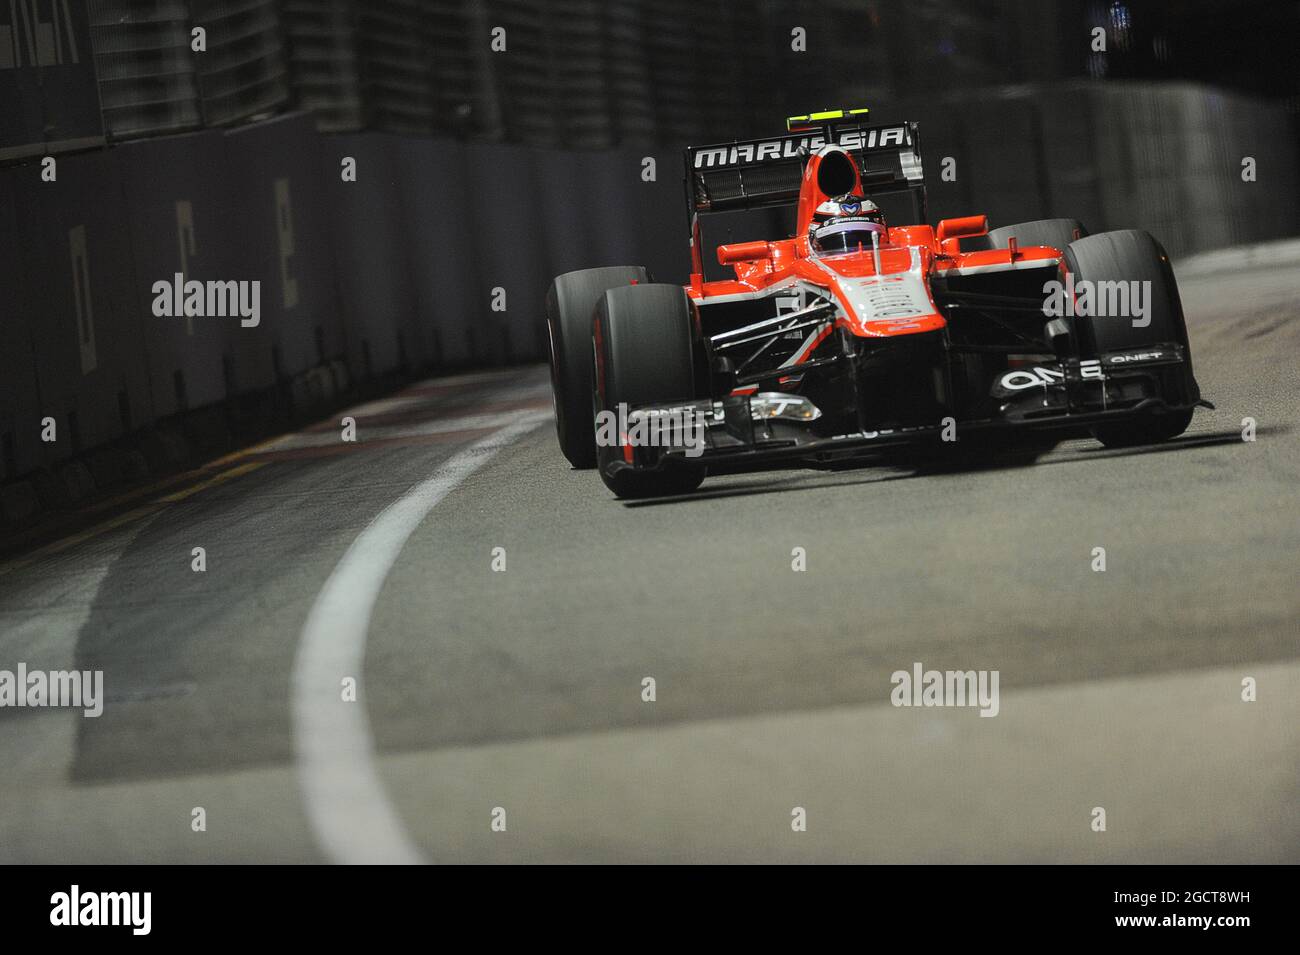 Max Chilton (GBR) Marussia F1 Team MR02. Gran Premio di Singapore, domenica 22 settembre 2013. Circuito Marina Bay Street, Singapore. Foto Stock